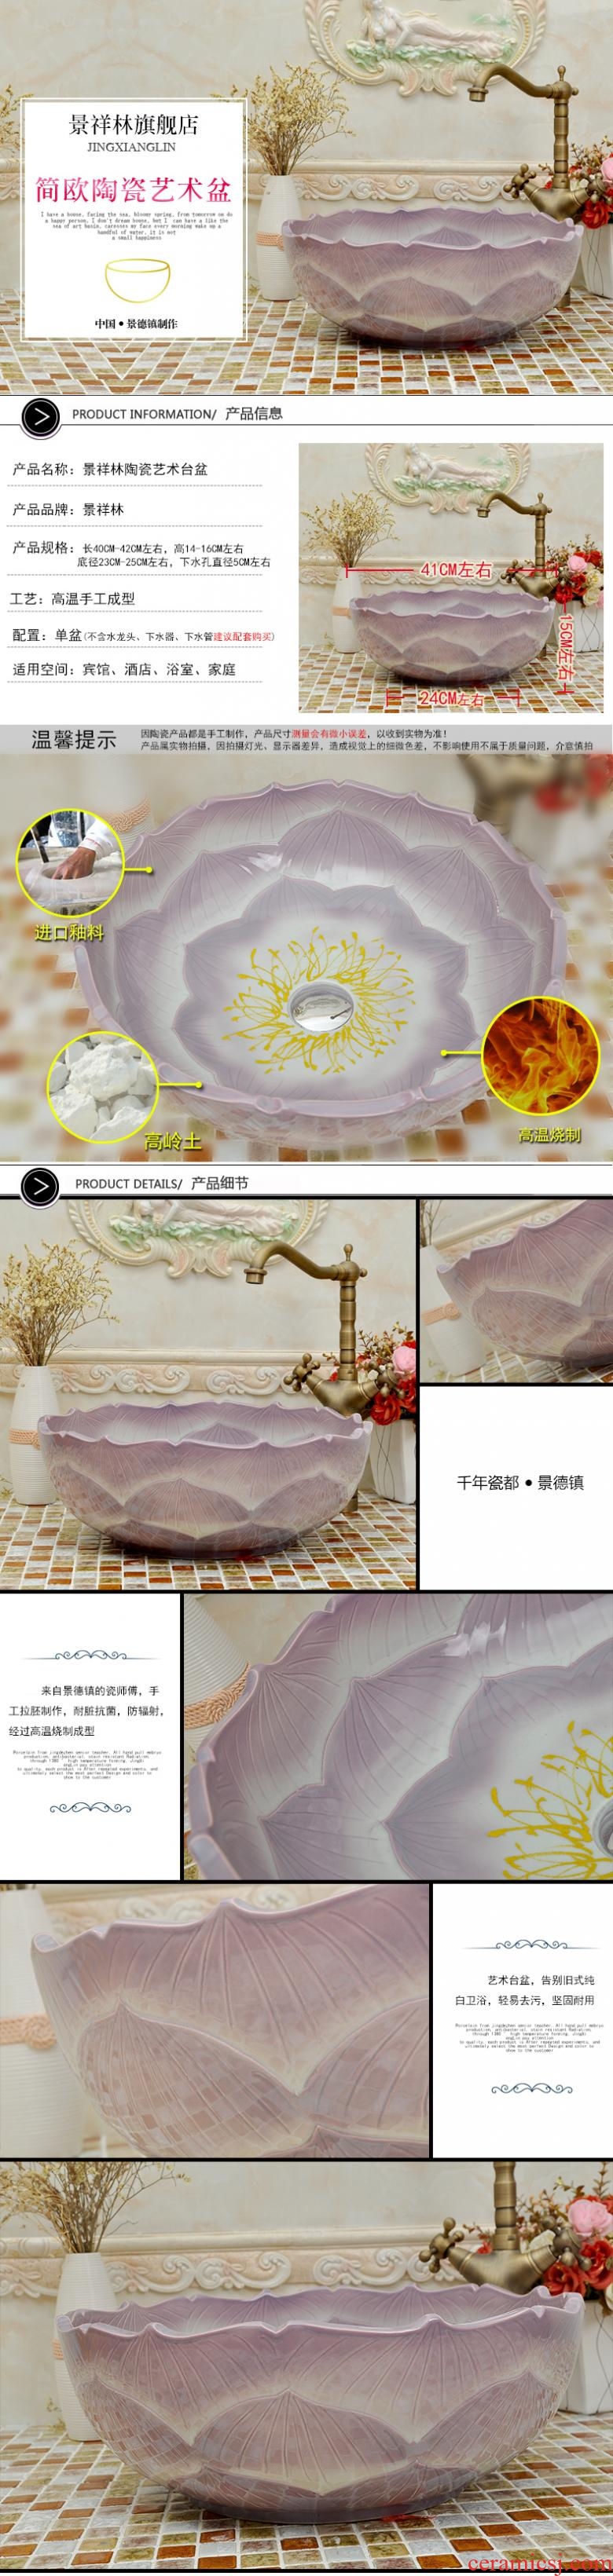 Ceramic lavabo stage basin of continental basin purple lotus petals art sink bathroom sinks